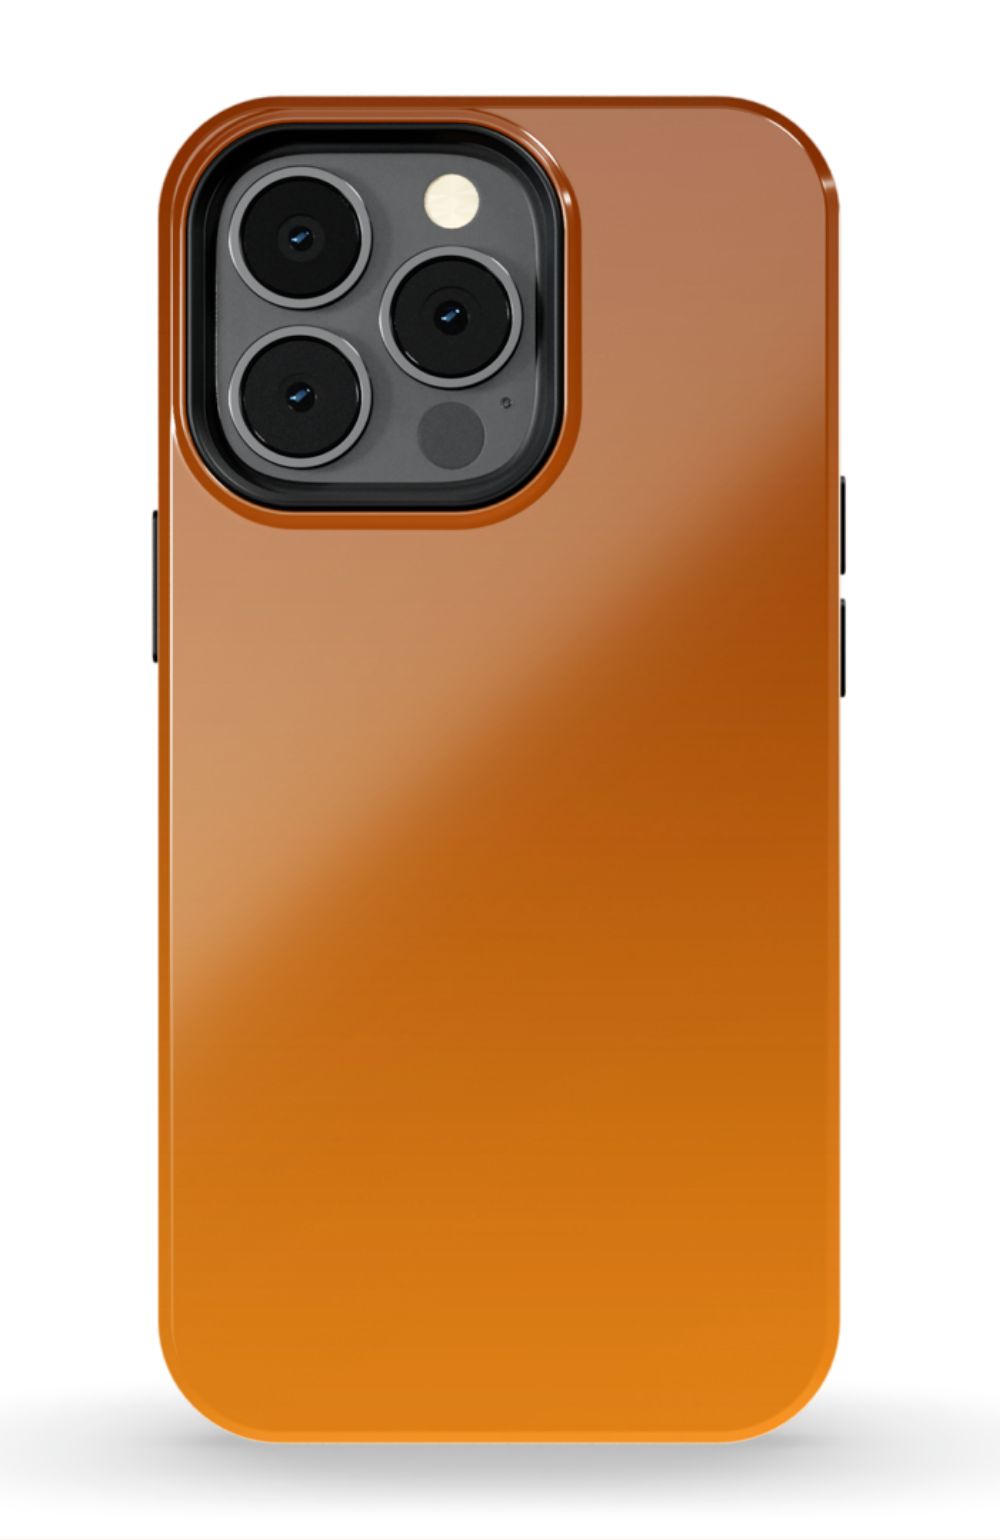 Retro 70S iPhone case